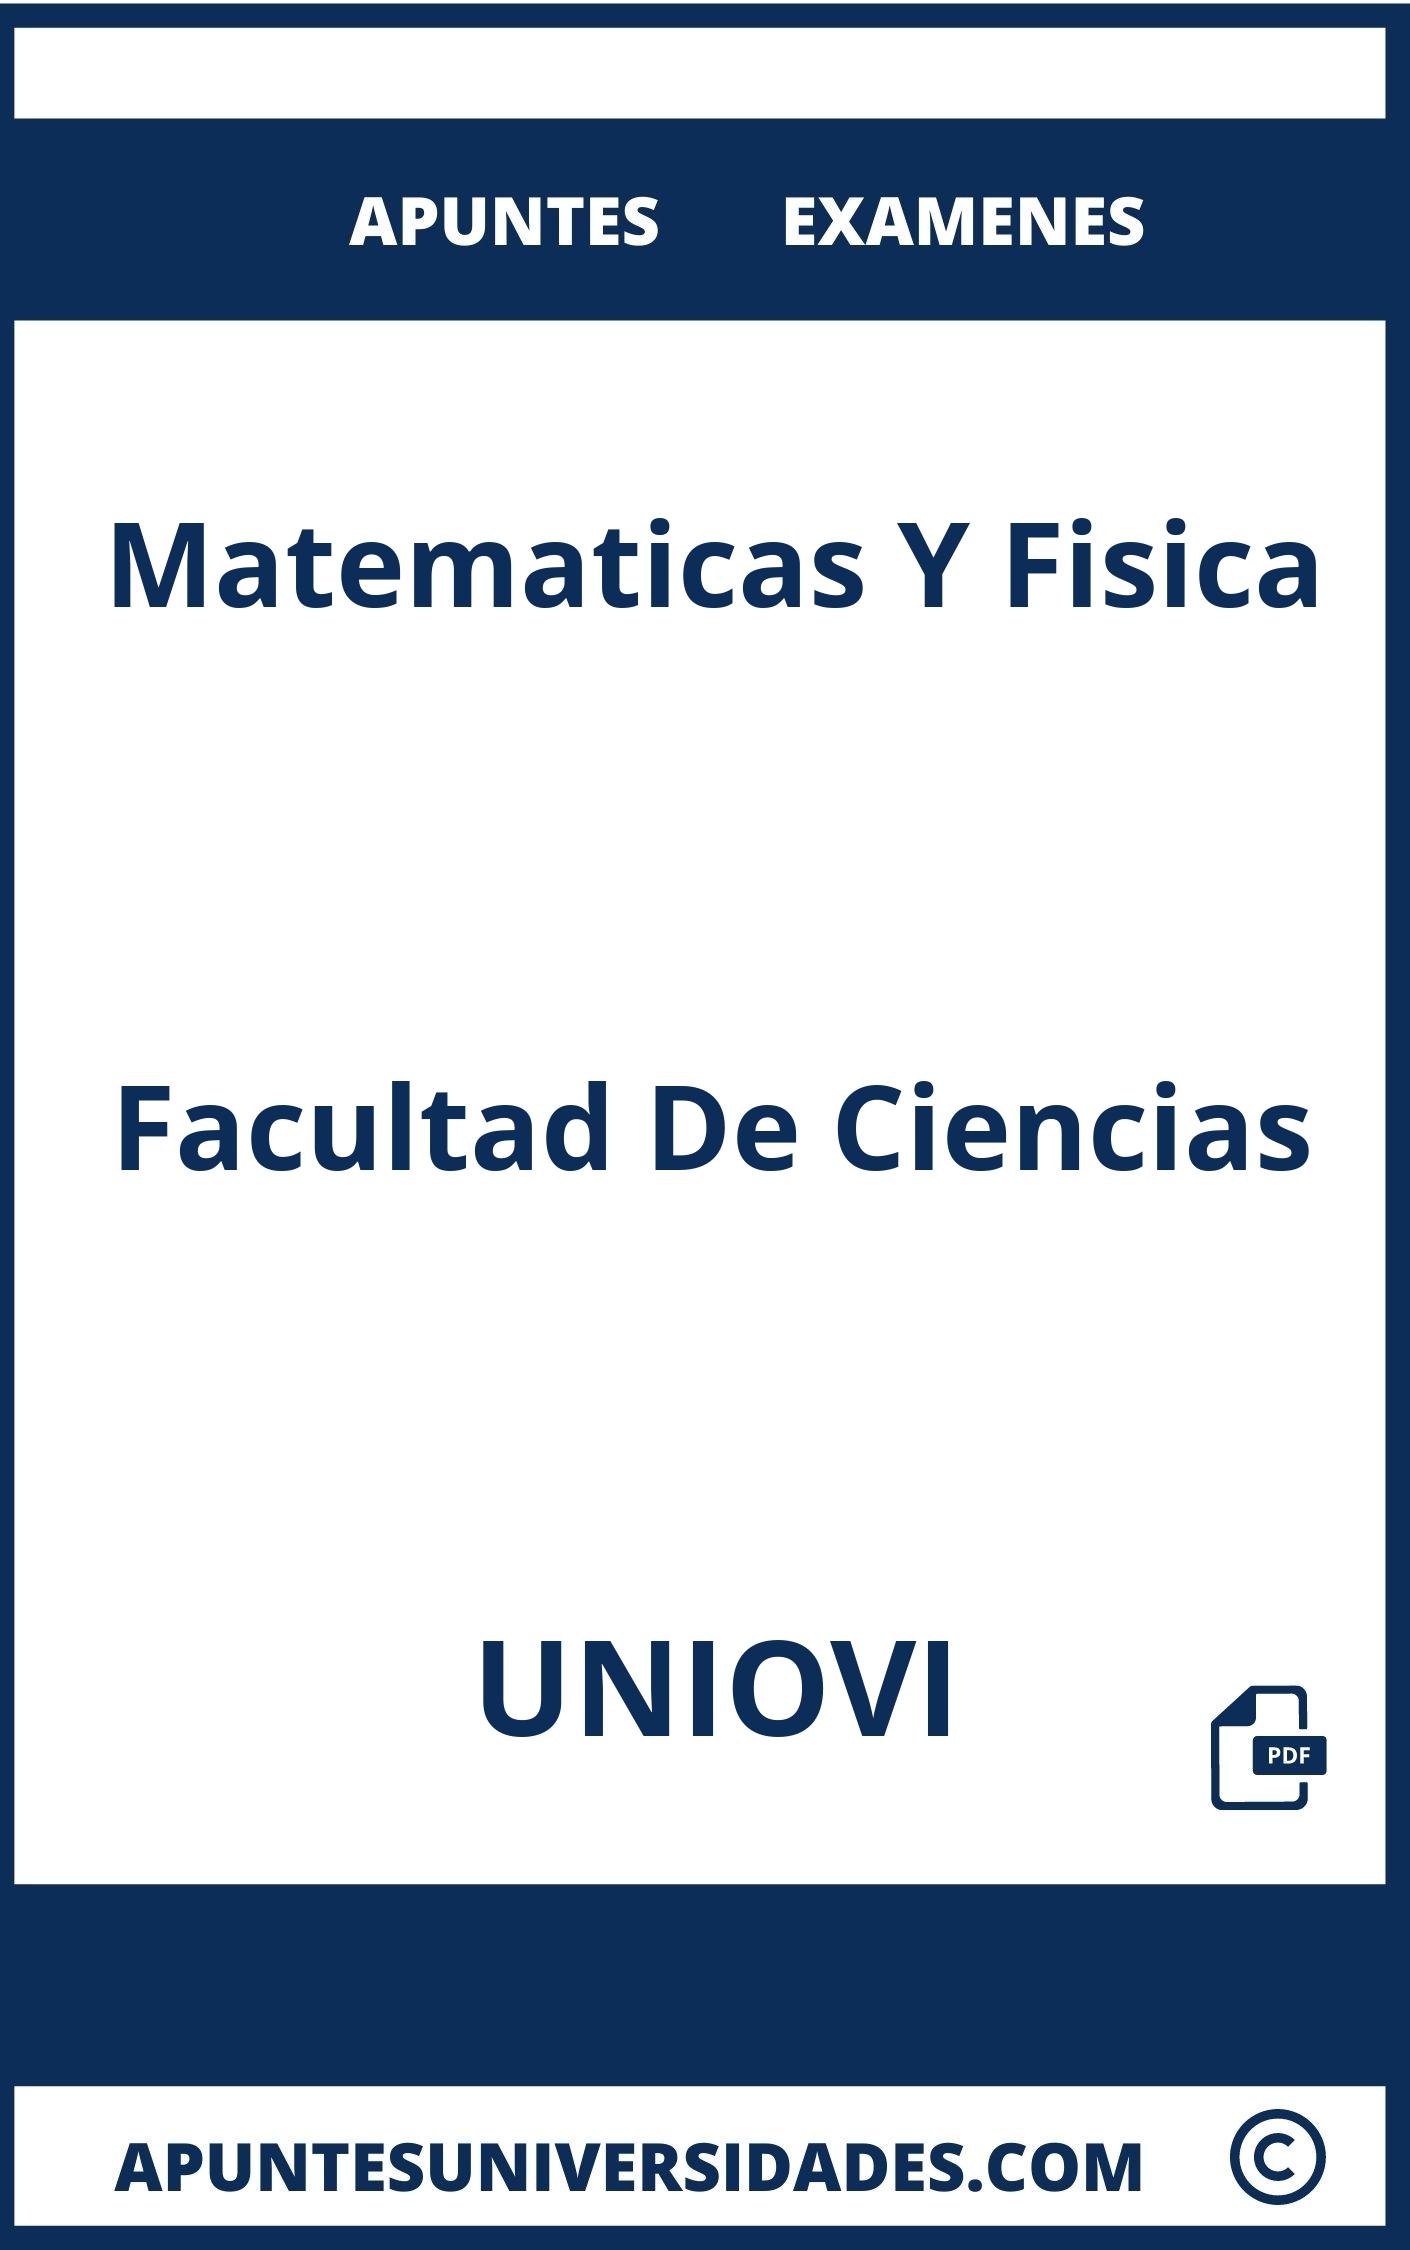 Examenes y Apuntes de Matematicas Y Fisica UNIOVI